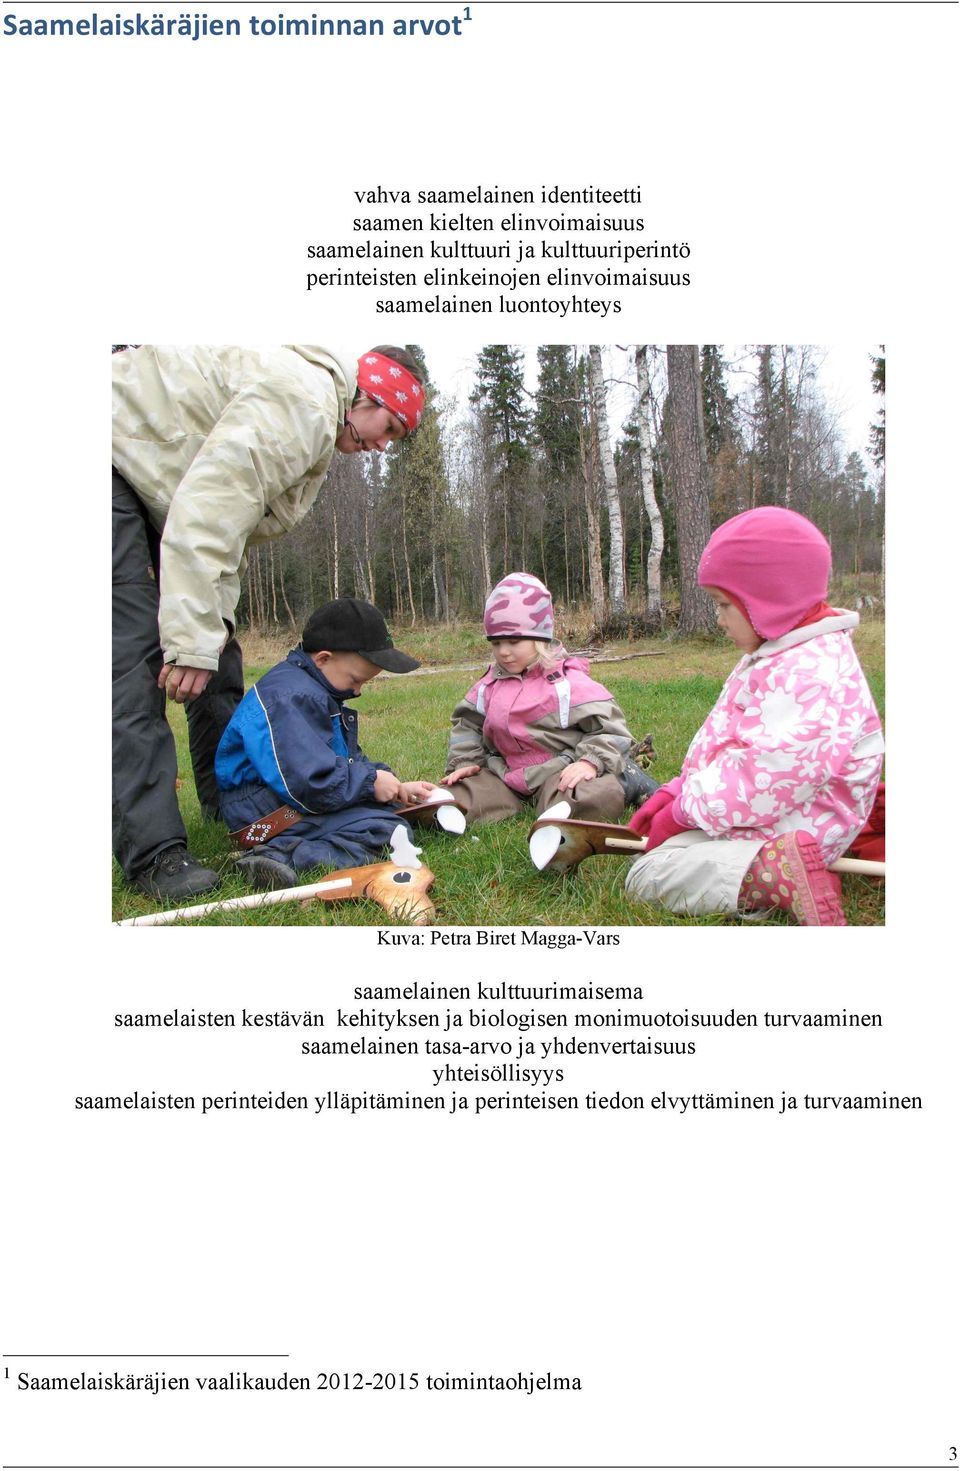 kulttuurimaisema saamelaisten kestävän kehityksen ja biologisen monimuotoisuuden turvaaminen saamelainen tasa-arvo ja yhdenvertaisuus